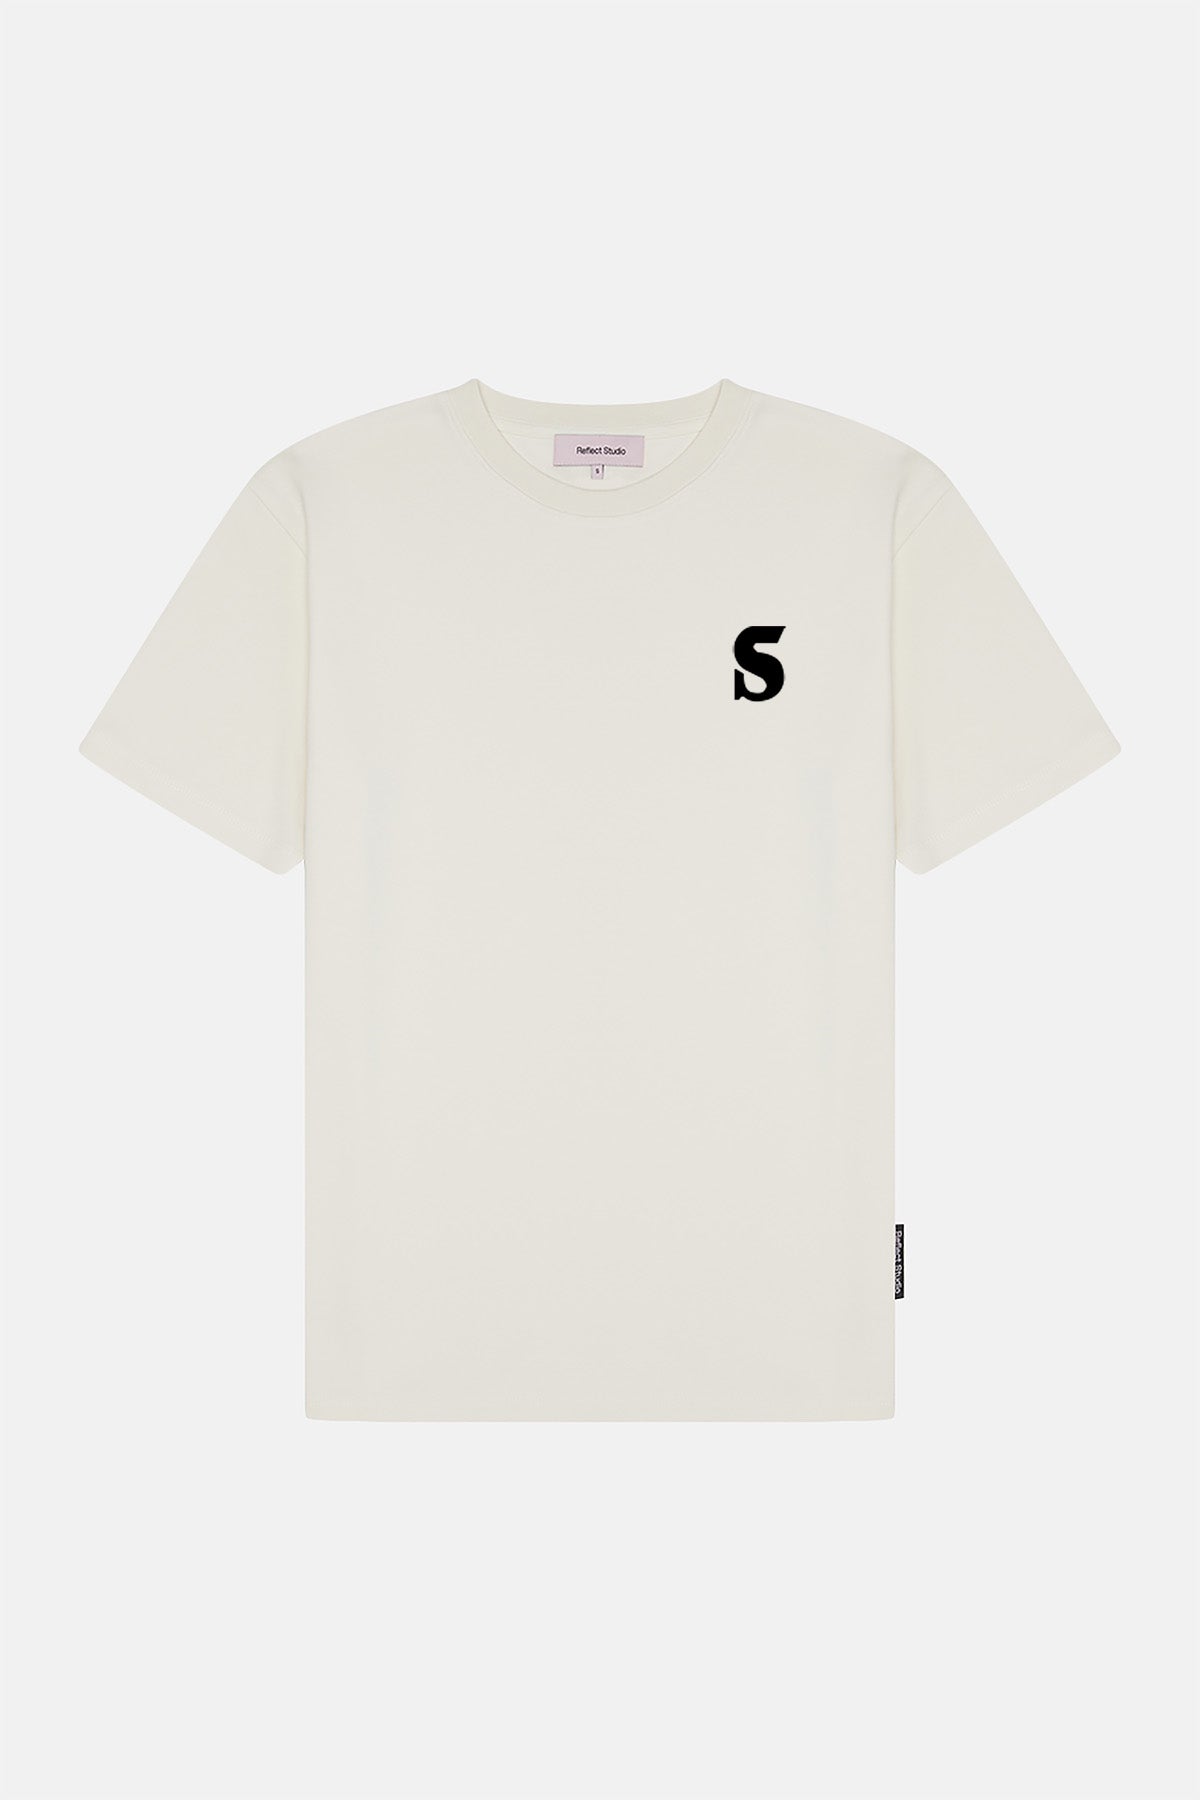 Issue #79 Premium T-Shirt - Ekru